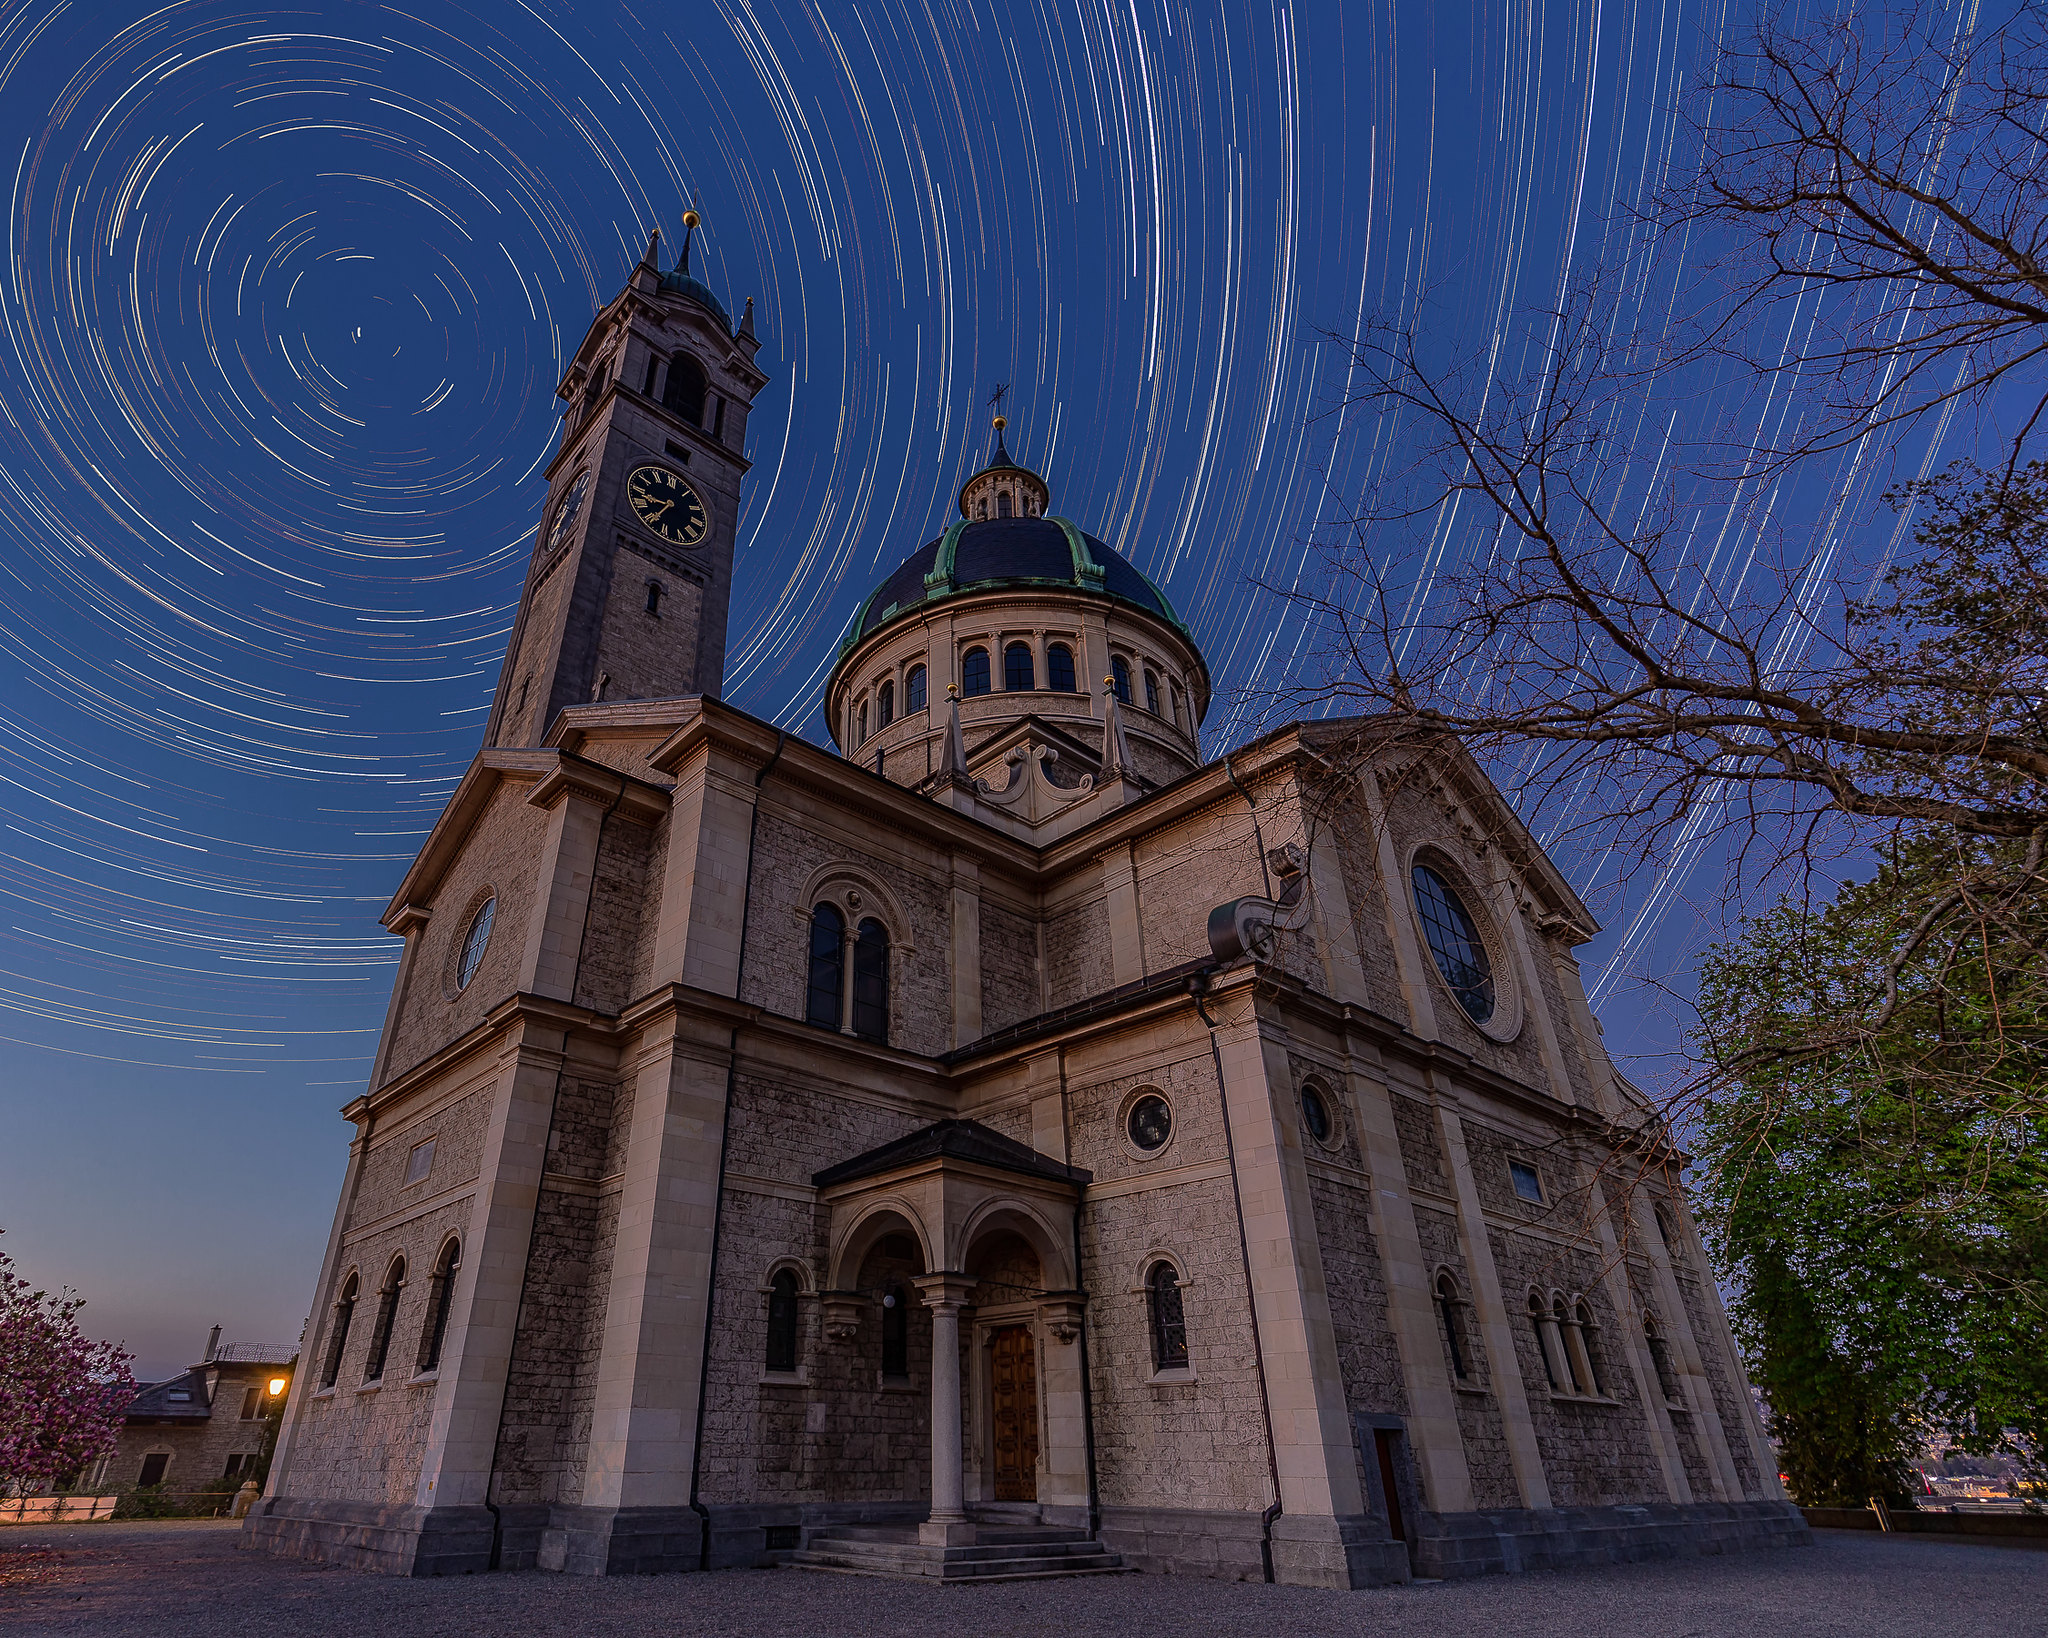 Foto der Sternenbewegung in Kreisen am Himmel über einer
Kirche